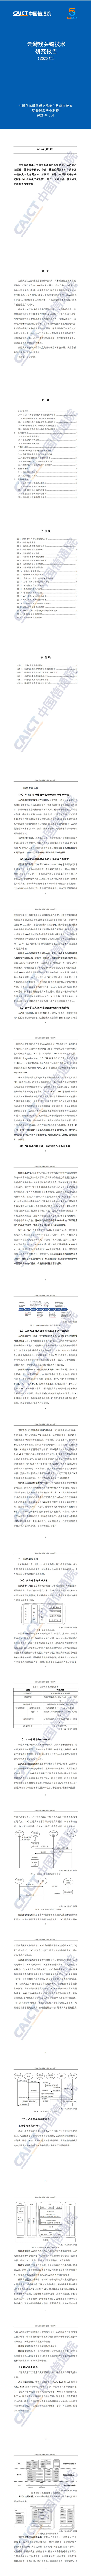 【中国信通院】云计算行业：云游戏关键技术研究报告（2020年）_0.jpg